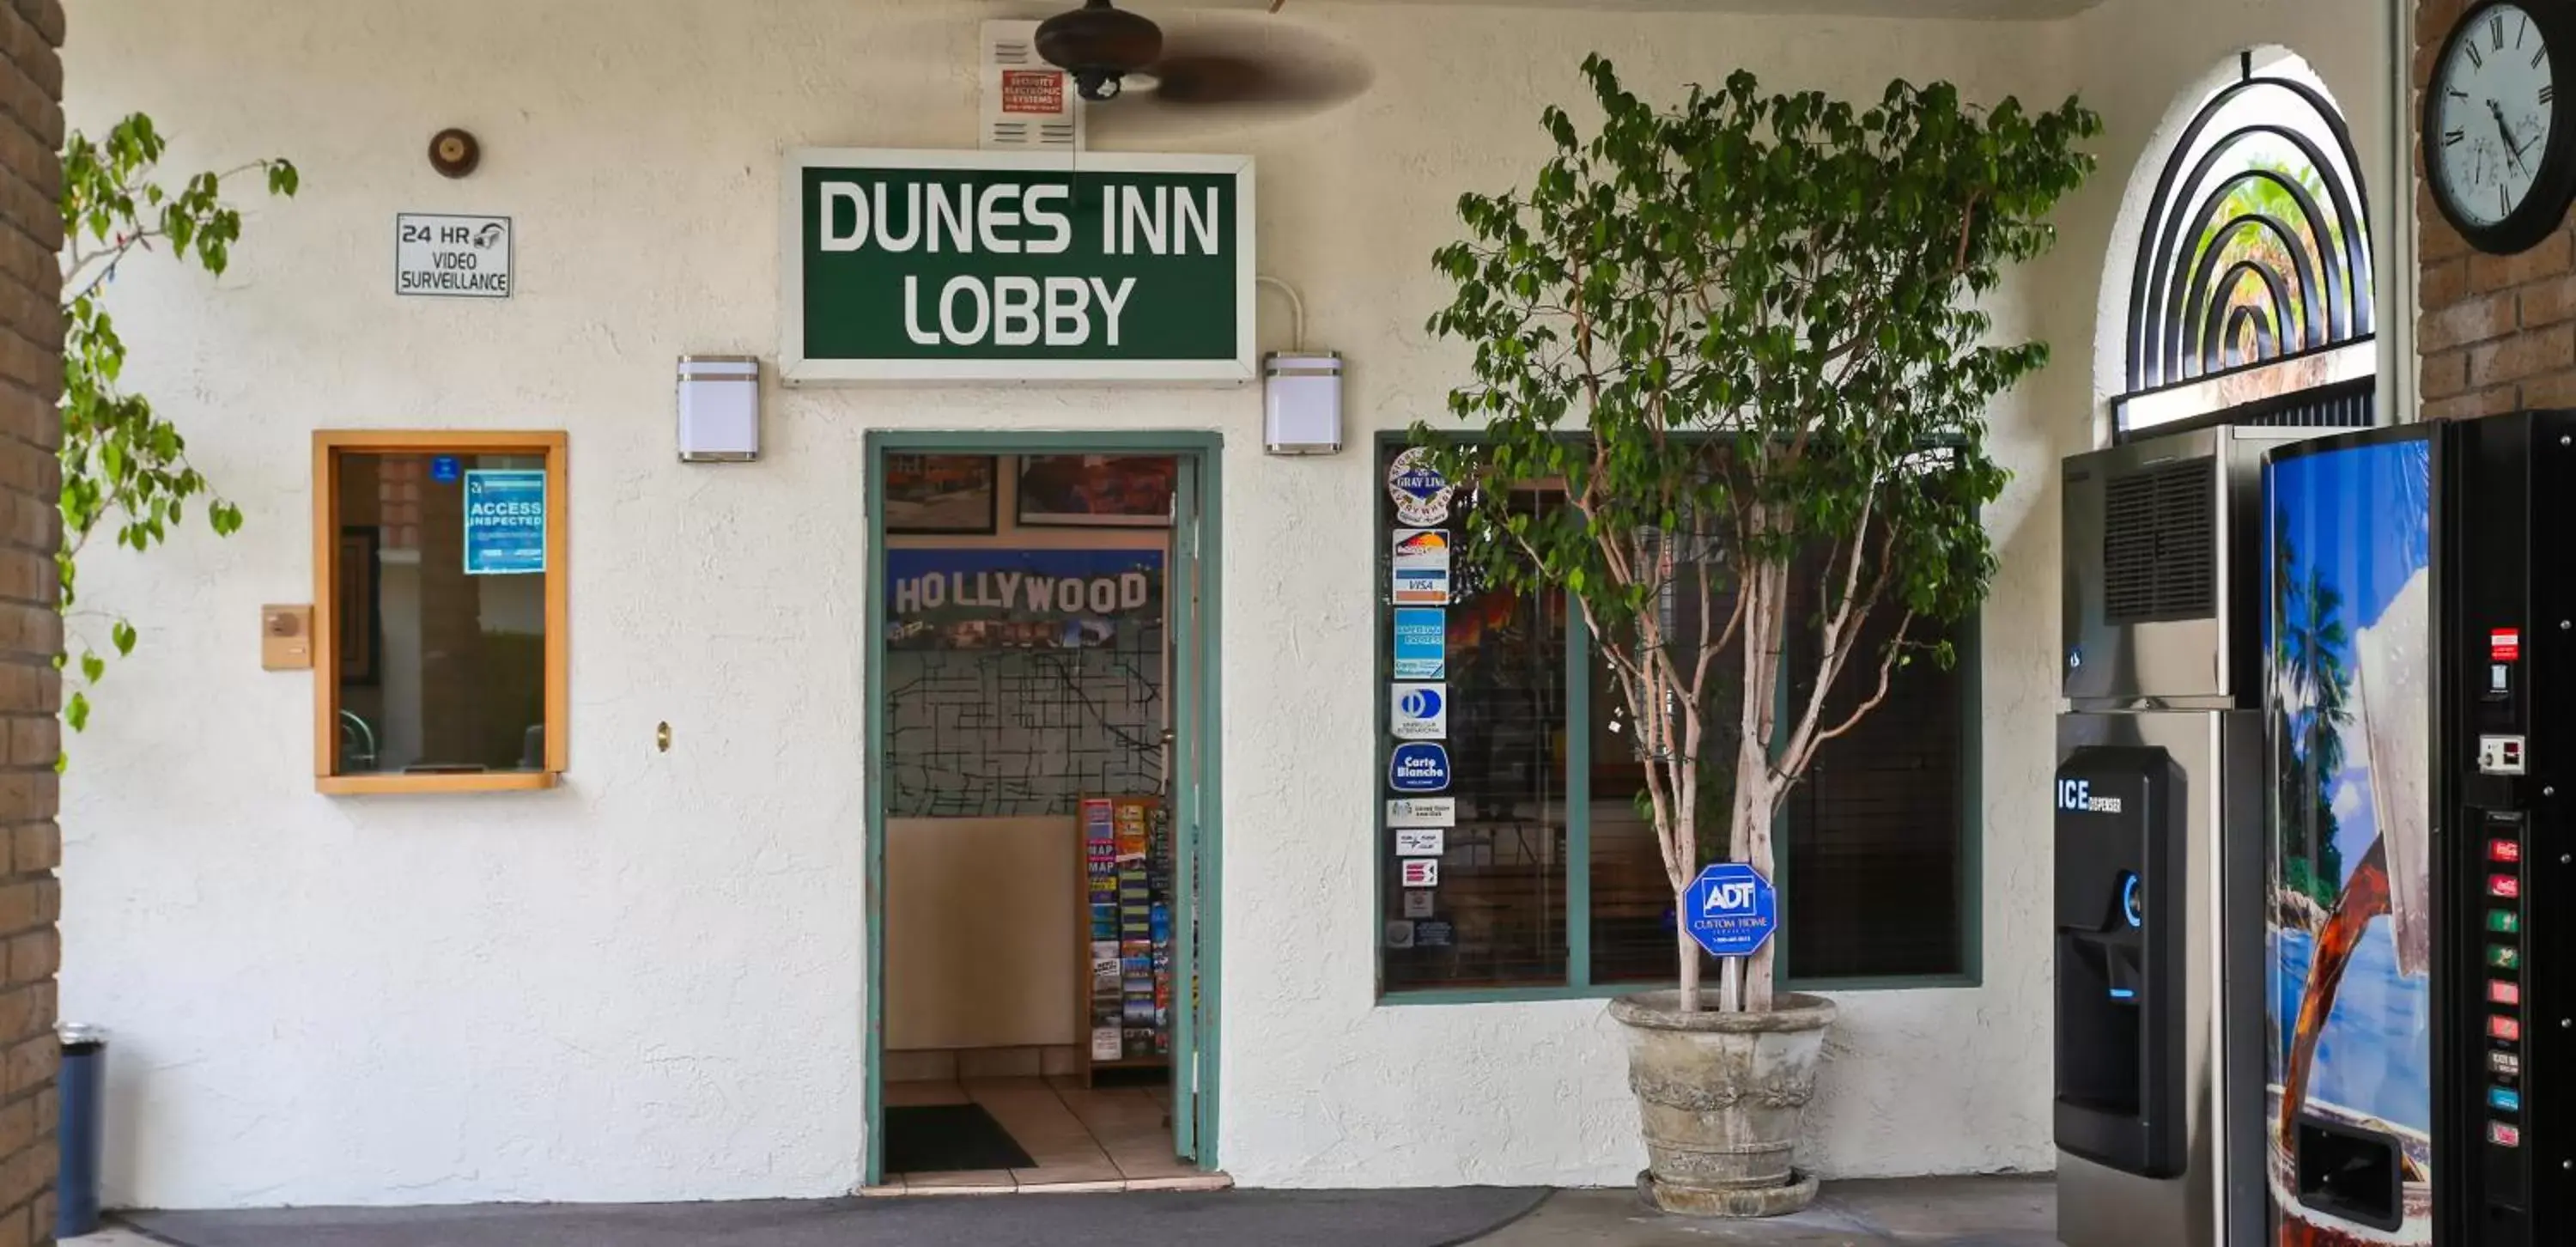 Lobby or reception in Dunes Inn - Sunset